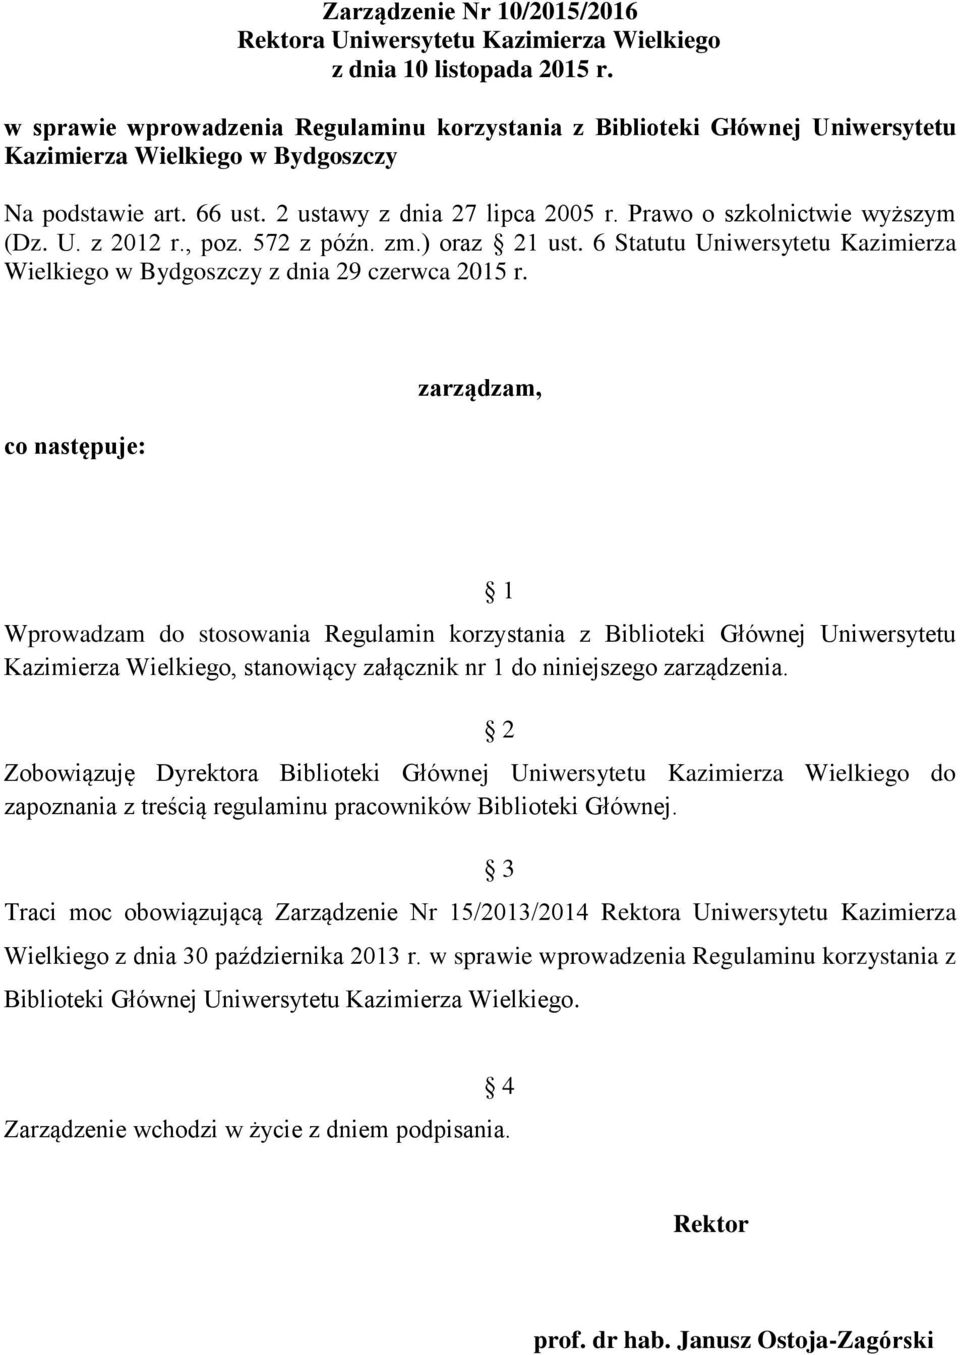 Prawo o szkolnictwie wyższym (Dz. U. z 2012 r., poz. 572 z późn. zm.) oraz 21 ust. 6 Statutu Uniwersytetu Kazimierza Wielkiego w Bydgoszczy z dnia 29 czerwca 2015 r.